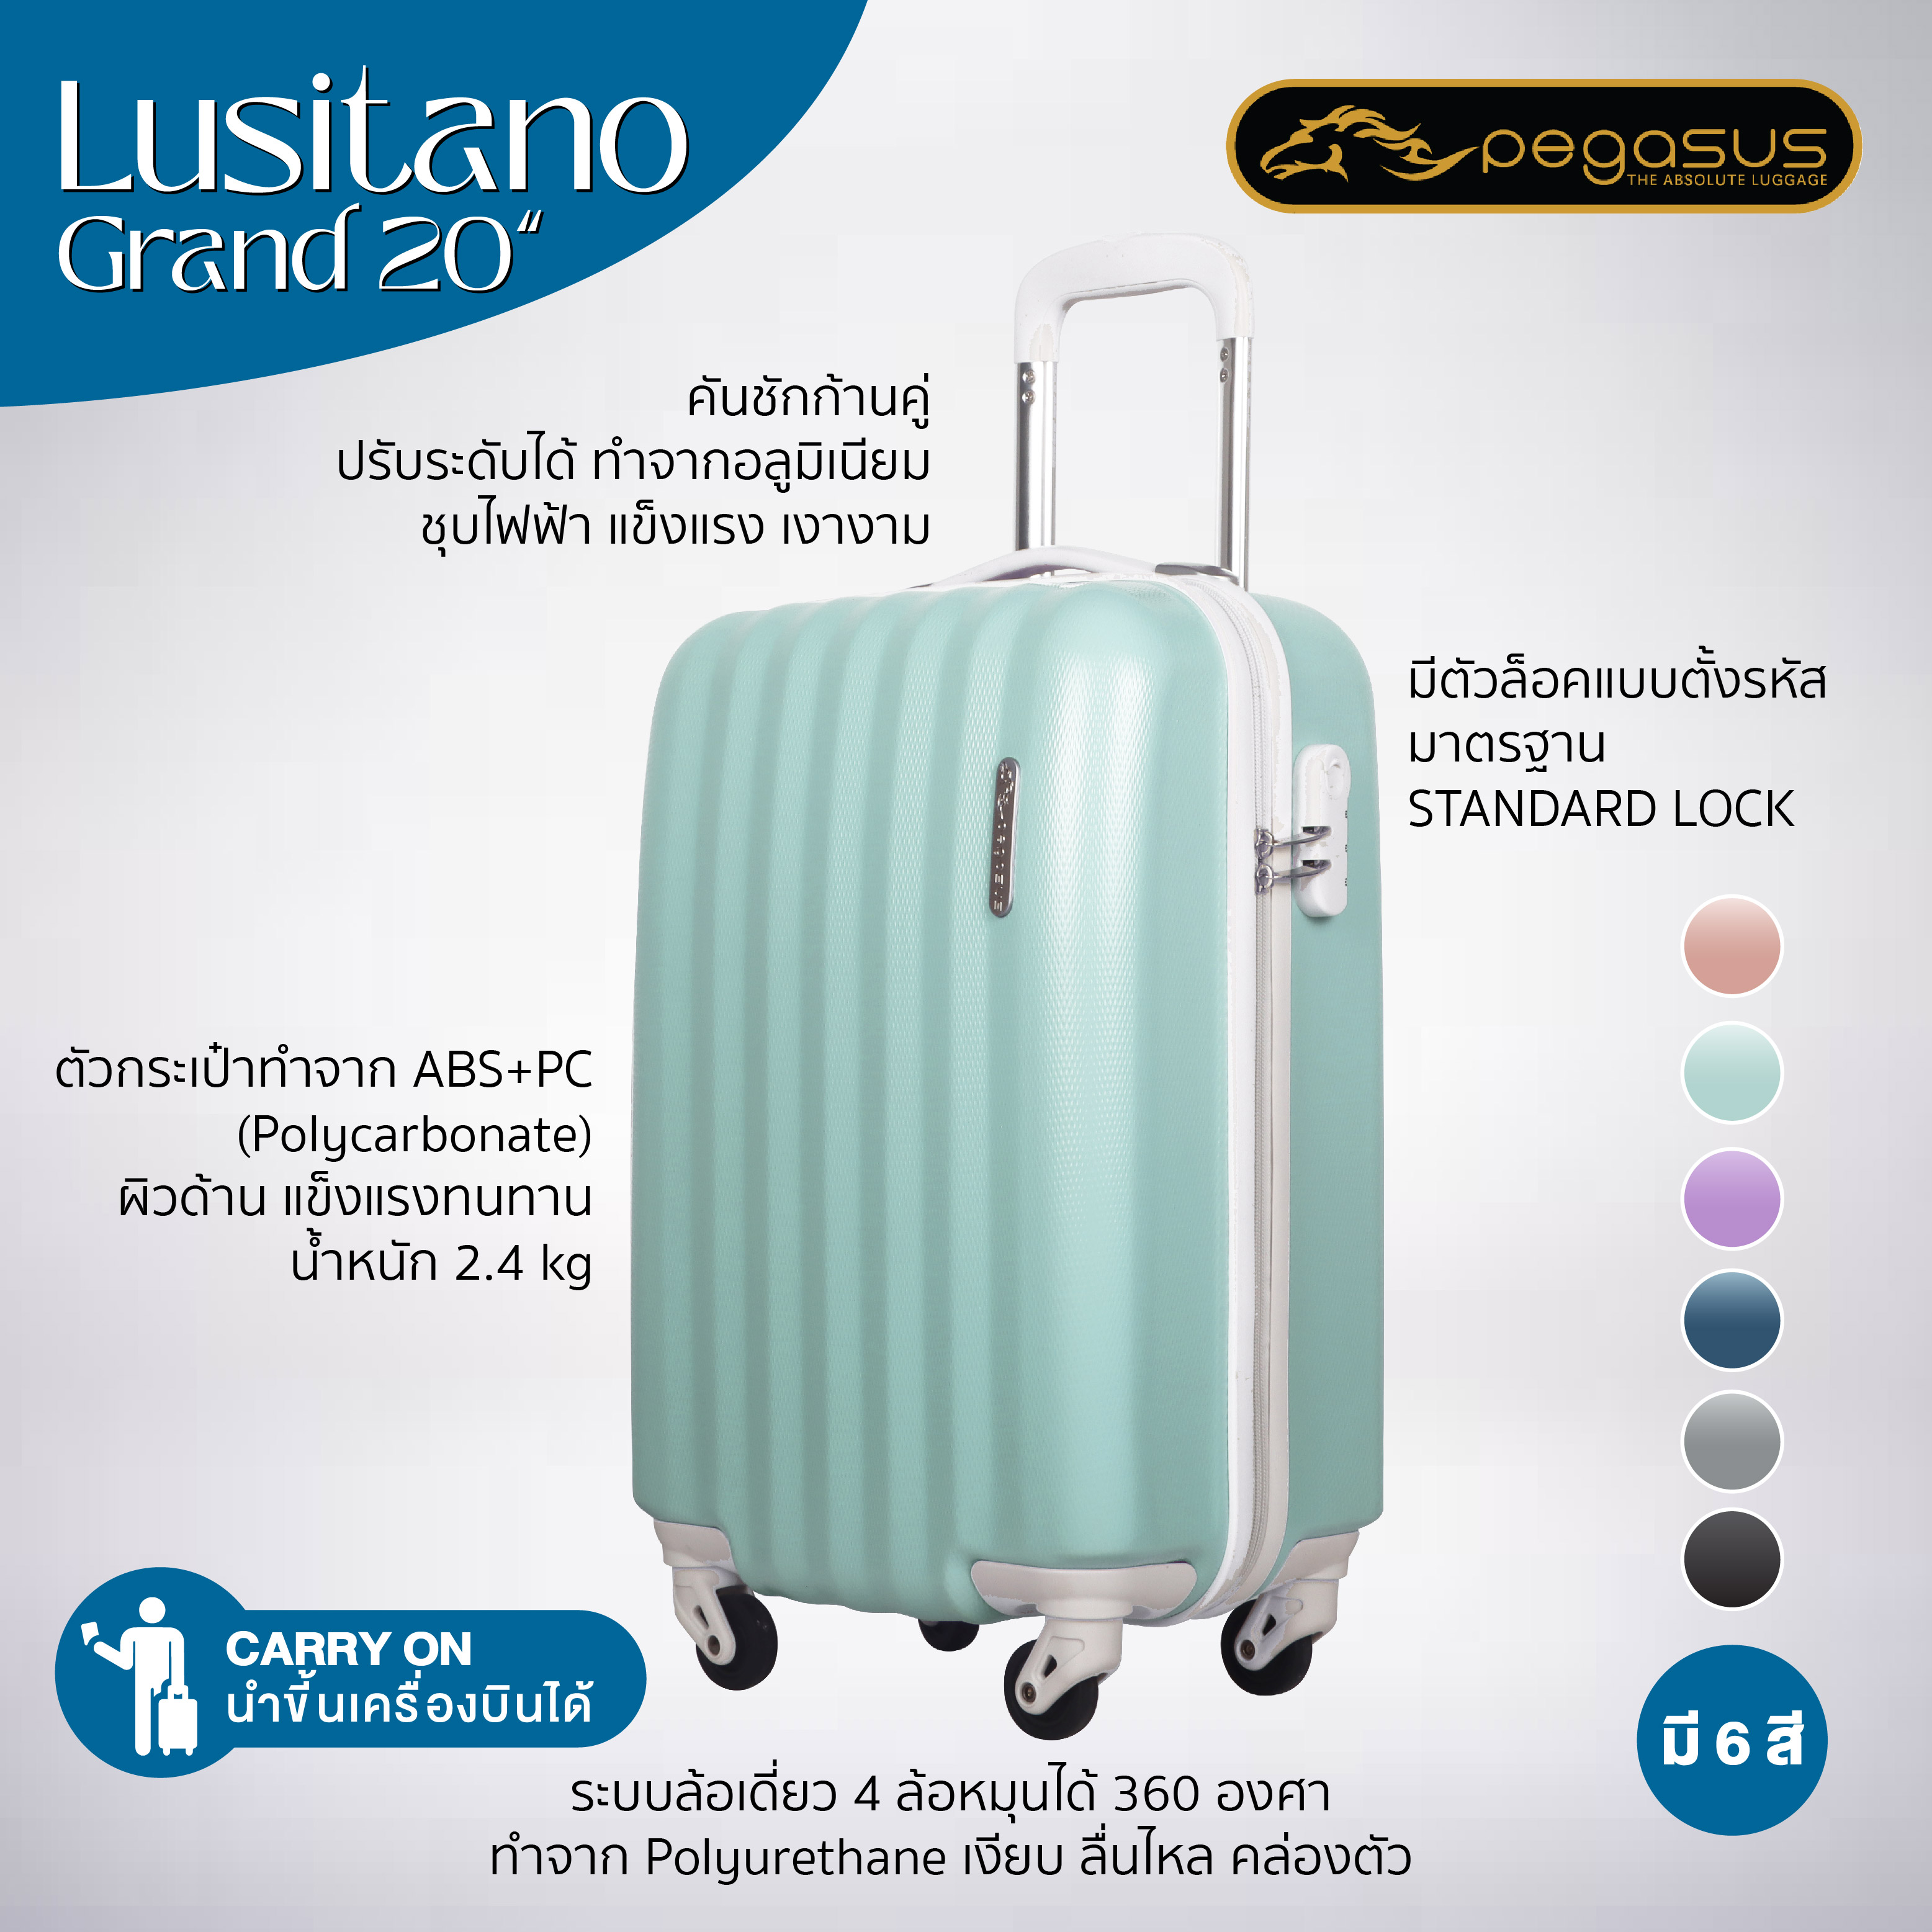 กระเป๋าเดินทาง 20 นิ้ว สีม่วงพาสเทล รุ่น Lusino Grand